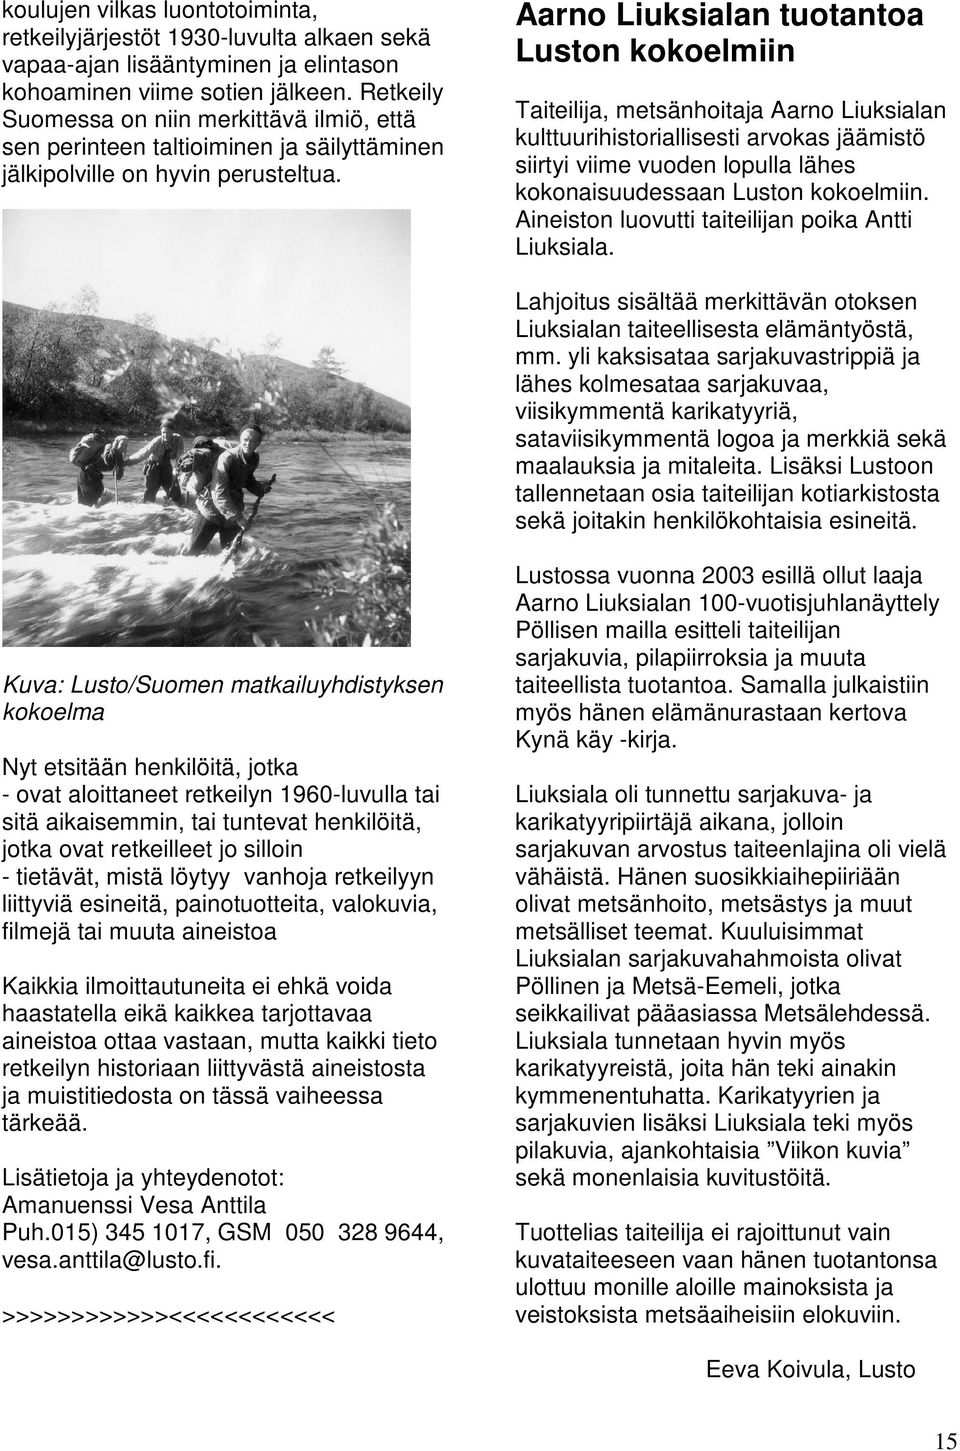 Aarno Liuksialan tuotantoa Luston kokoelmiin Taiteilija, metsänhoitaja Aarno Liuksialan kulttuurihistoriallisesti arvokas jäämistö siirtyi viime vuoden lopulla lähes kokonaisuudessaan Luston